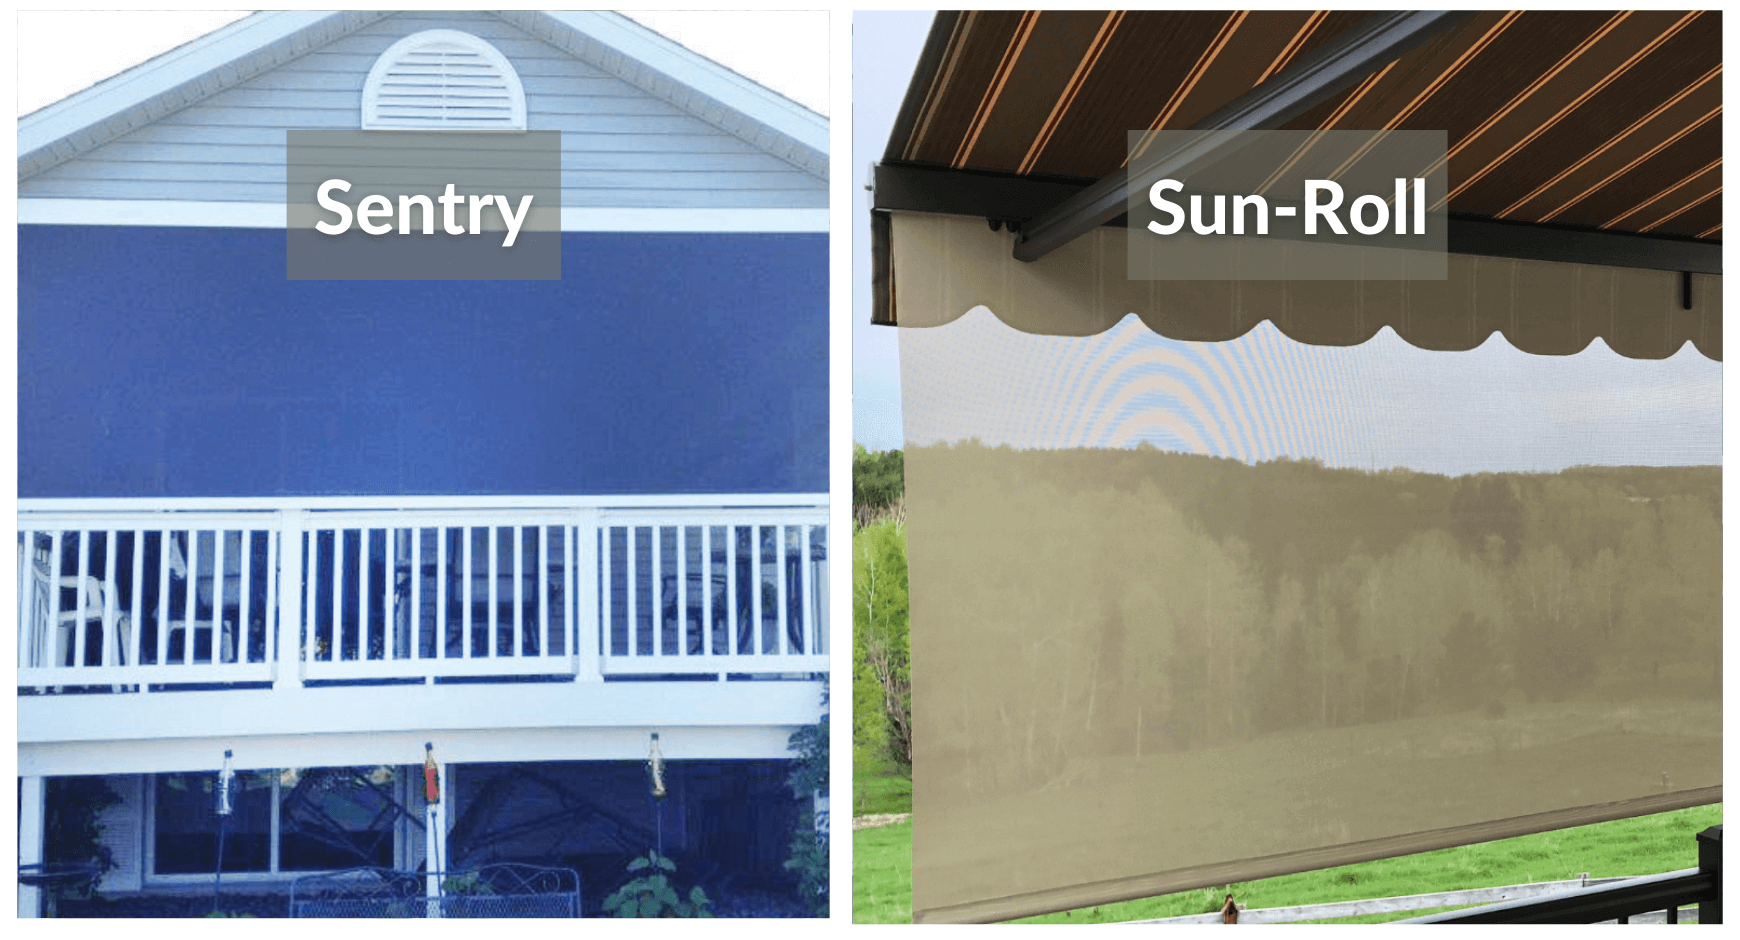 Sun roll and sentry comparison